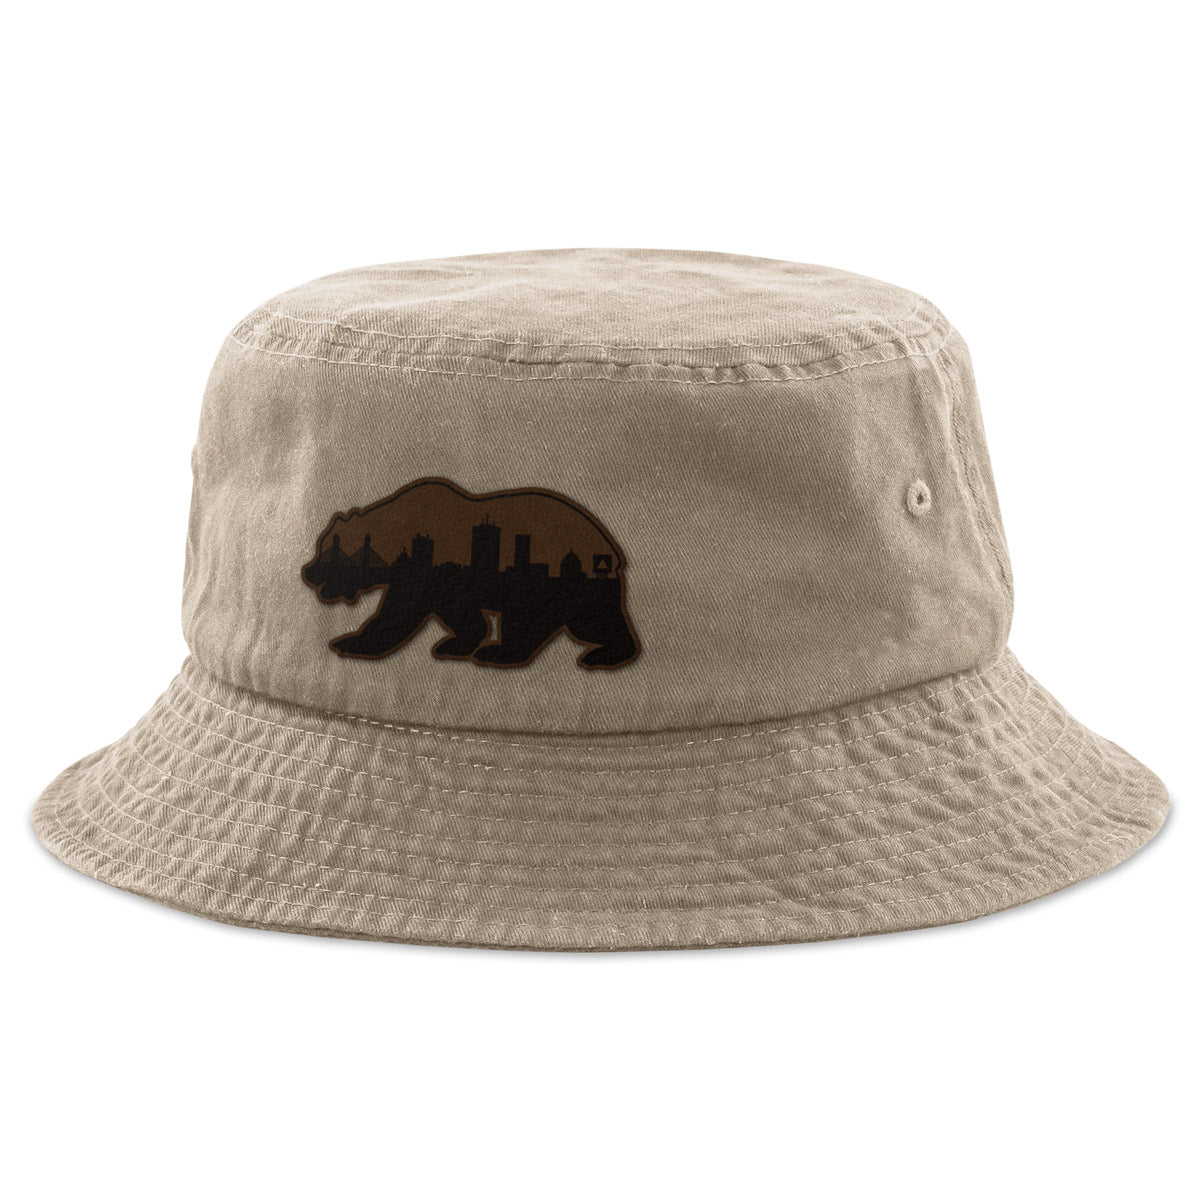 Boston Bear Skyline Leather Patch Bucket Hat - Chowdaheadz